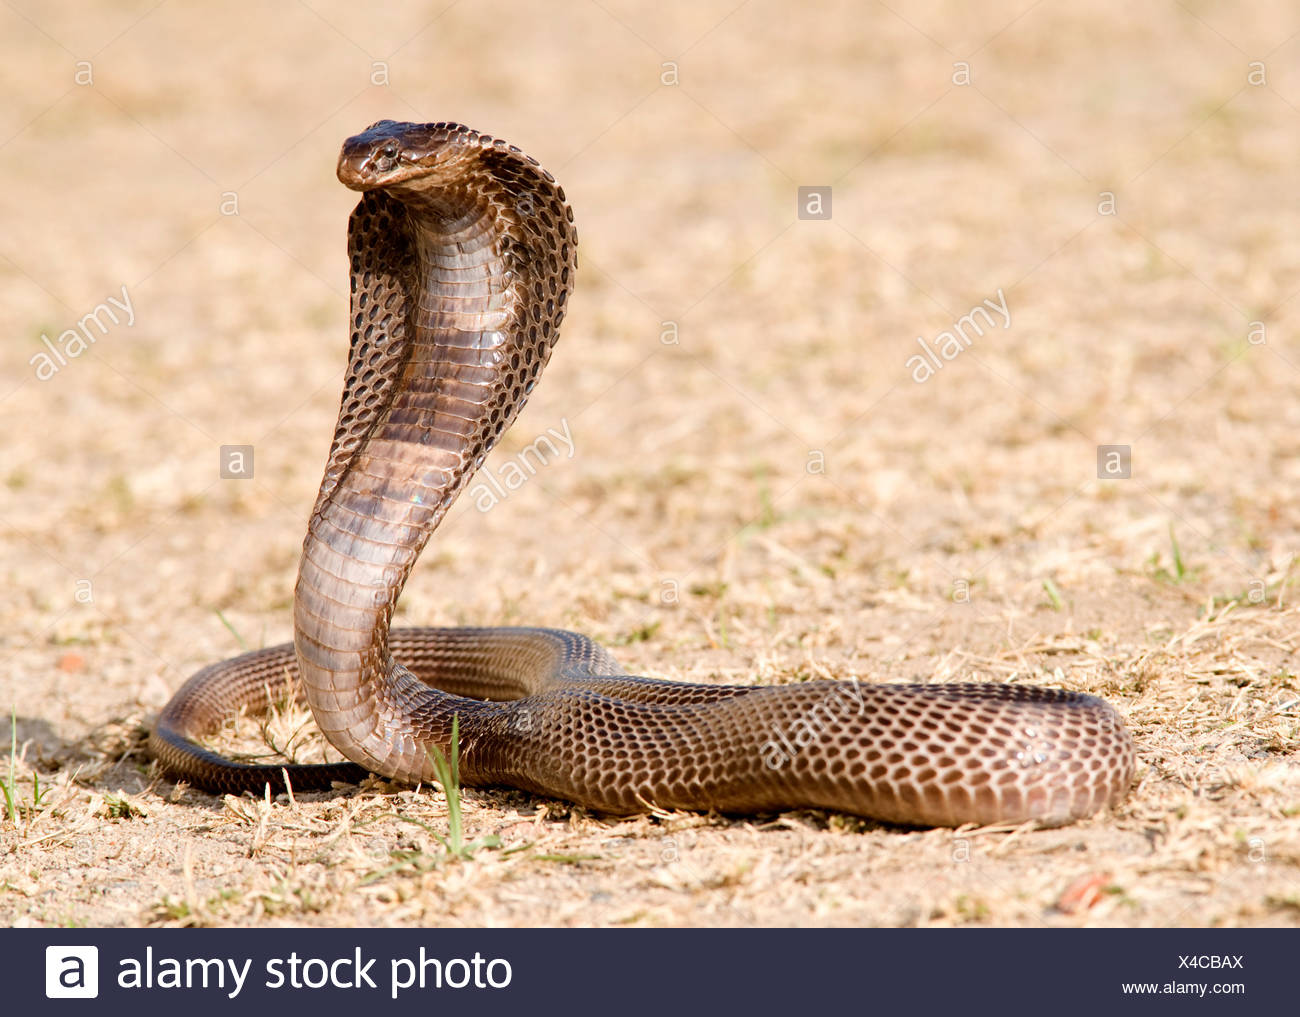 Agyptische Kobra Schlange Naja Haje Indien Stockfotografie Alamy